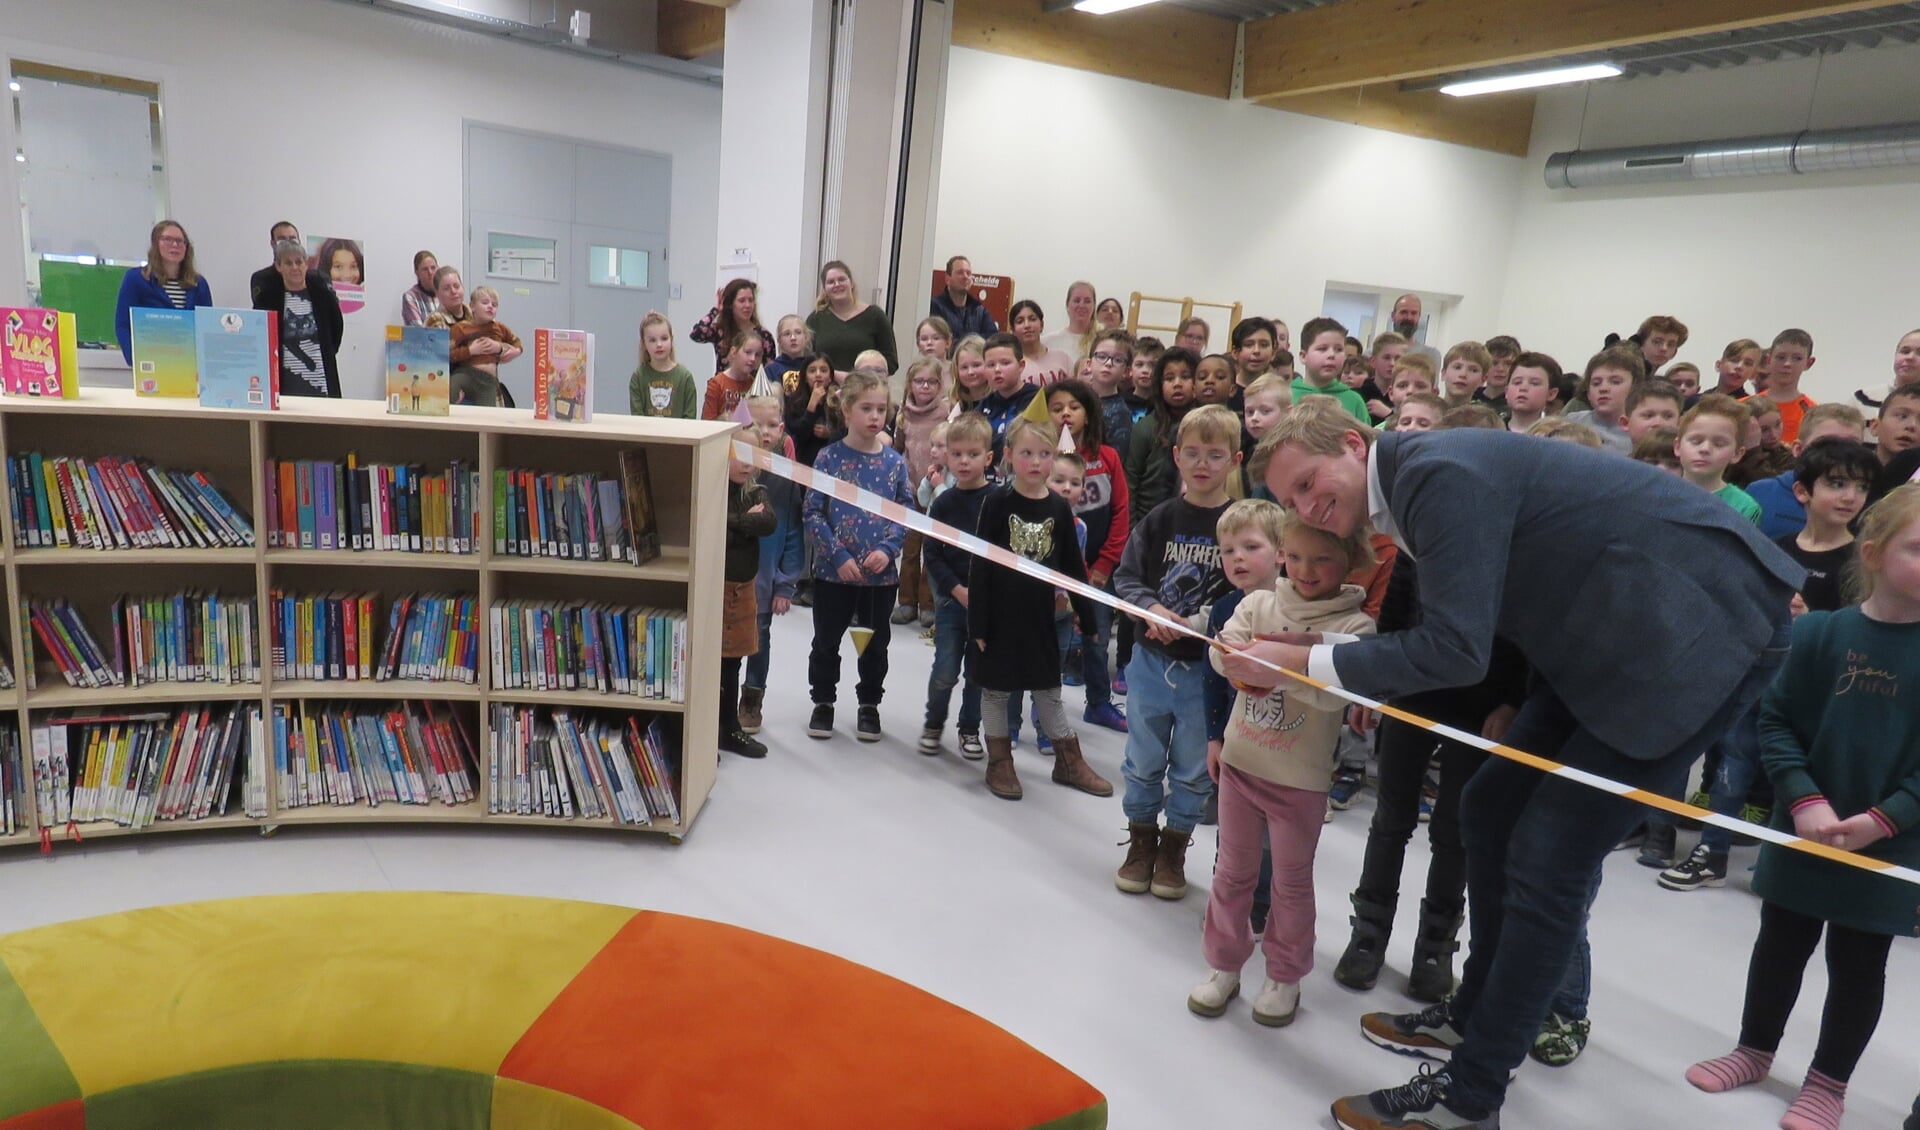 Wethouder Drenth opent samen met leerling Zoë de Bibliotheek op School in Zuidbroek.